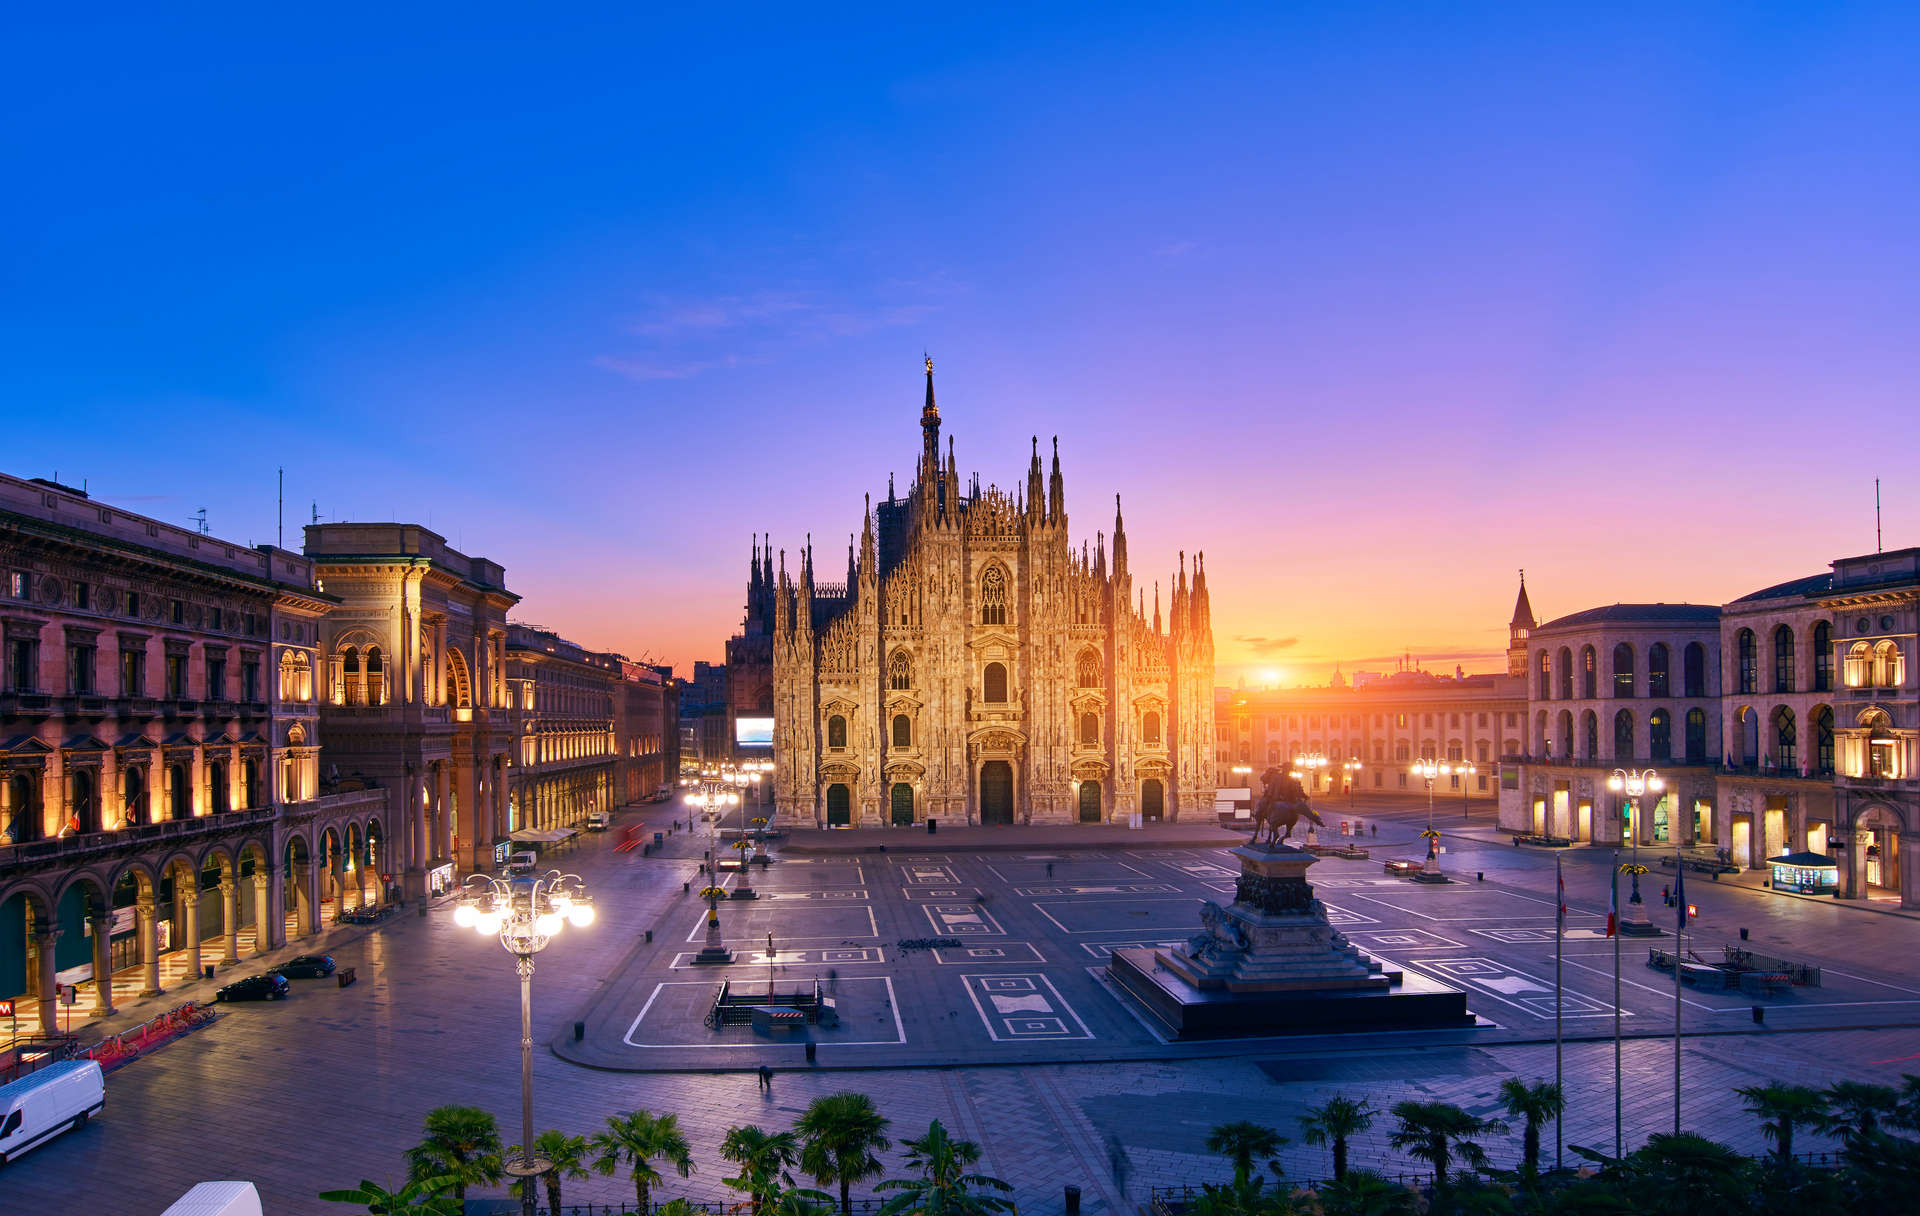 Milan's Duomo cathedral